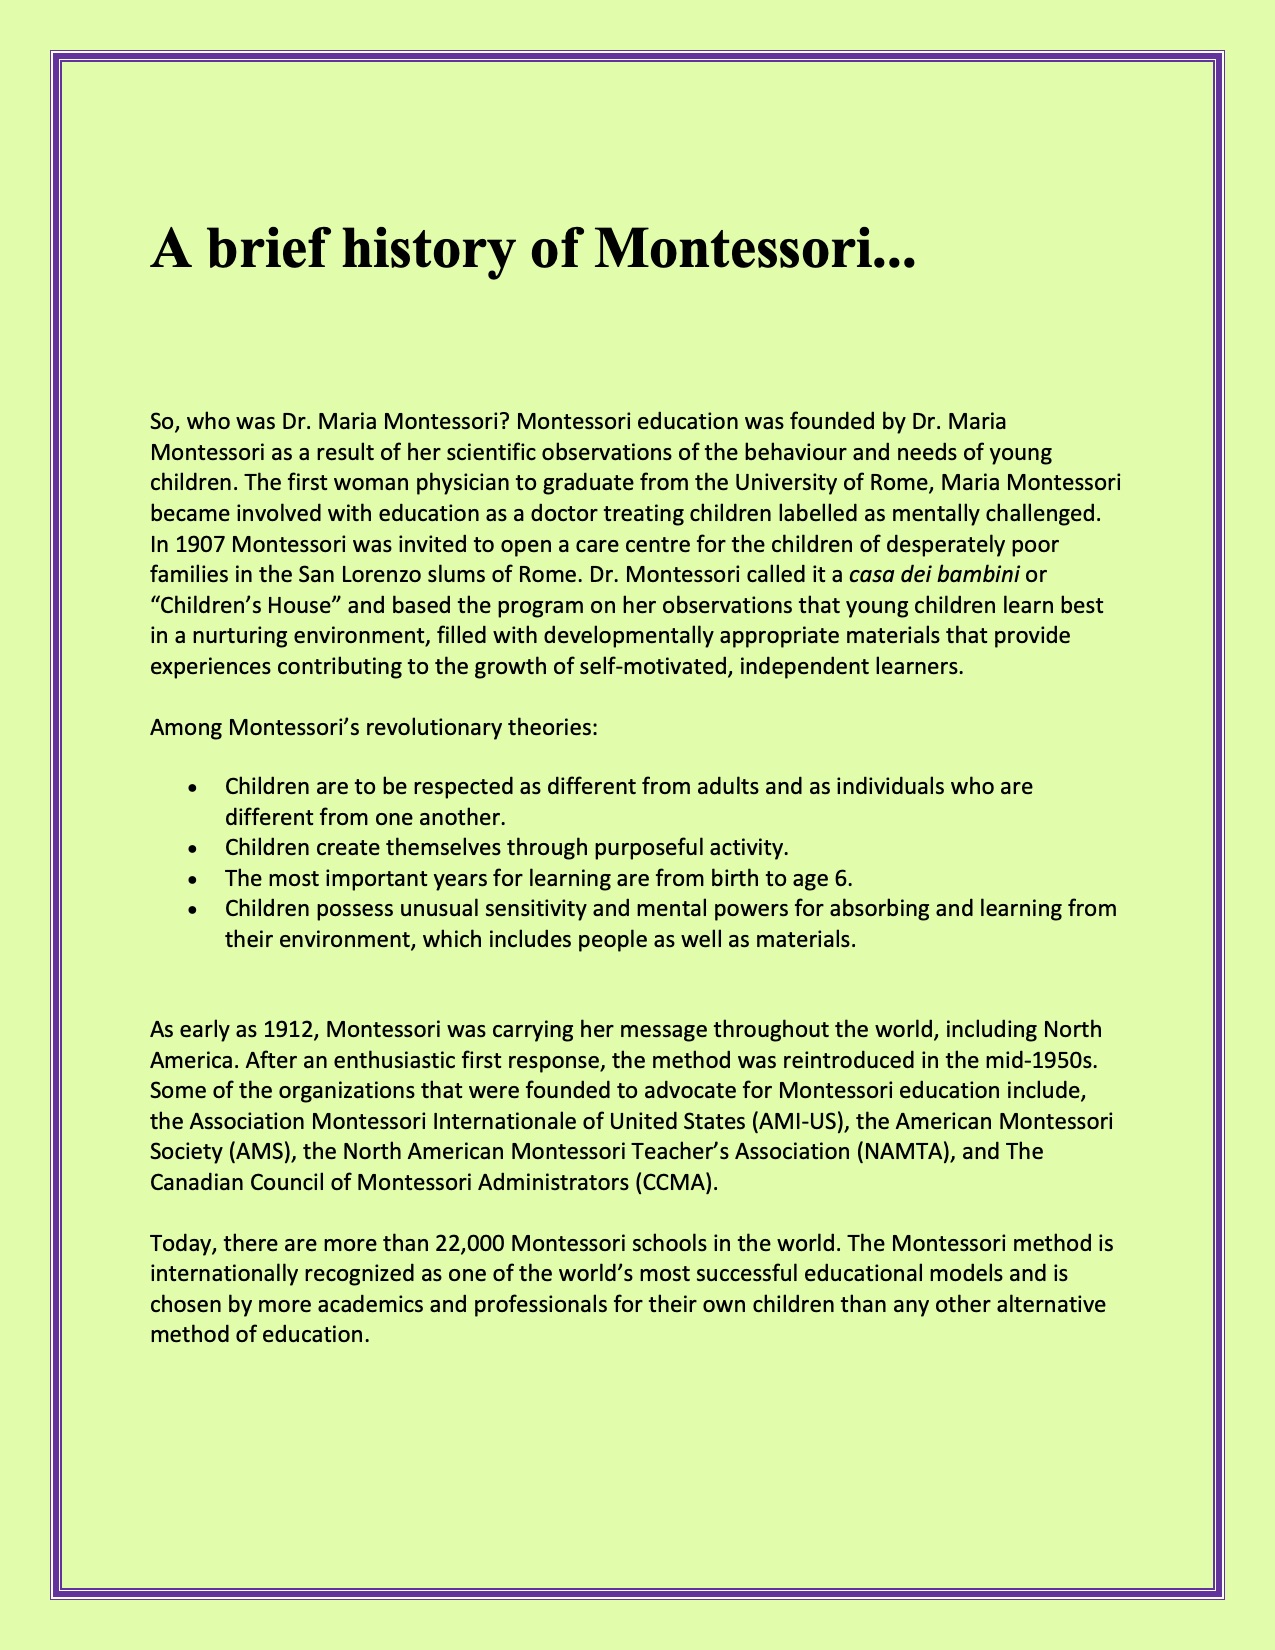 A Brief History of Montessori